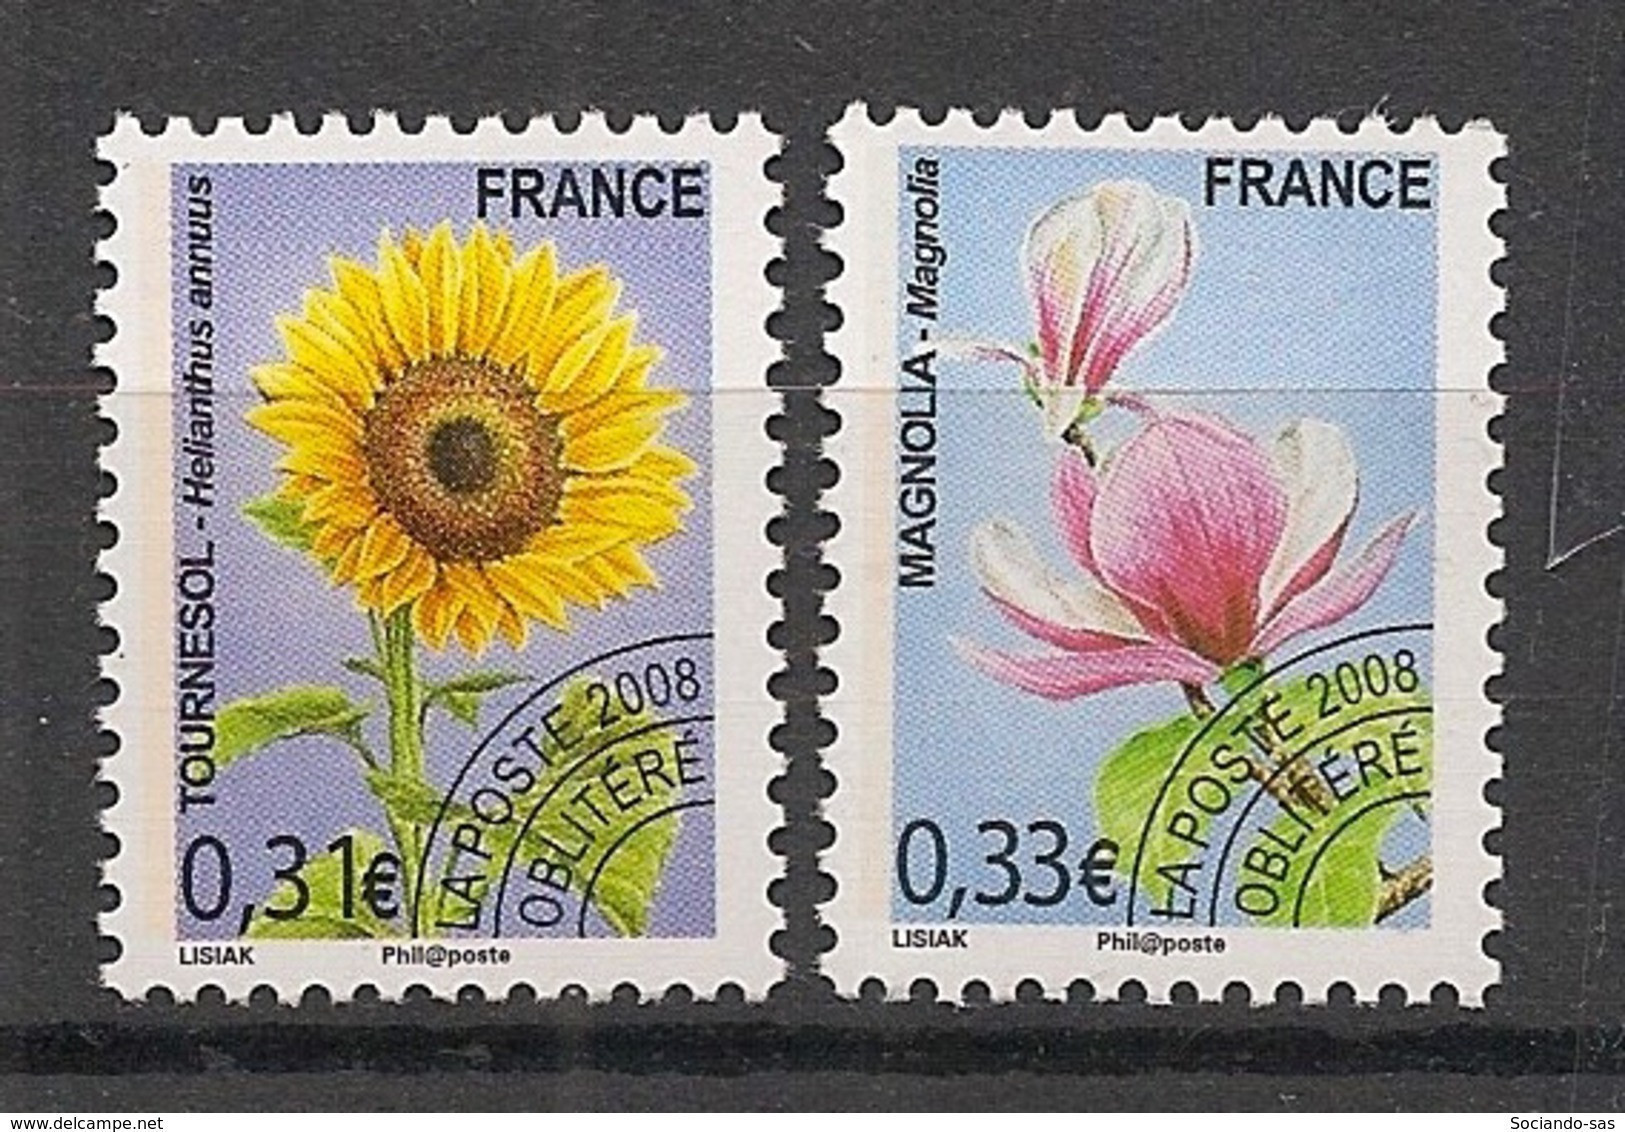 FRANCE - 2008 - Préo N°YT. 257 à 258 - Série Complète - Fleurs - Neuf Luxe ** / MNH / Postfrisch - 1989-2008